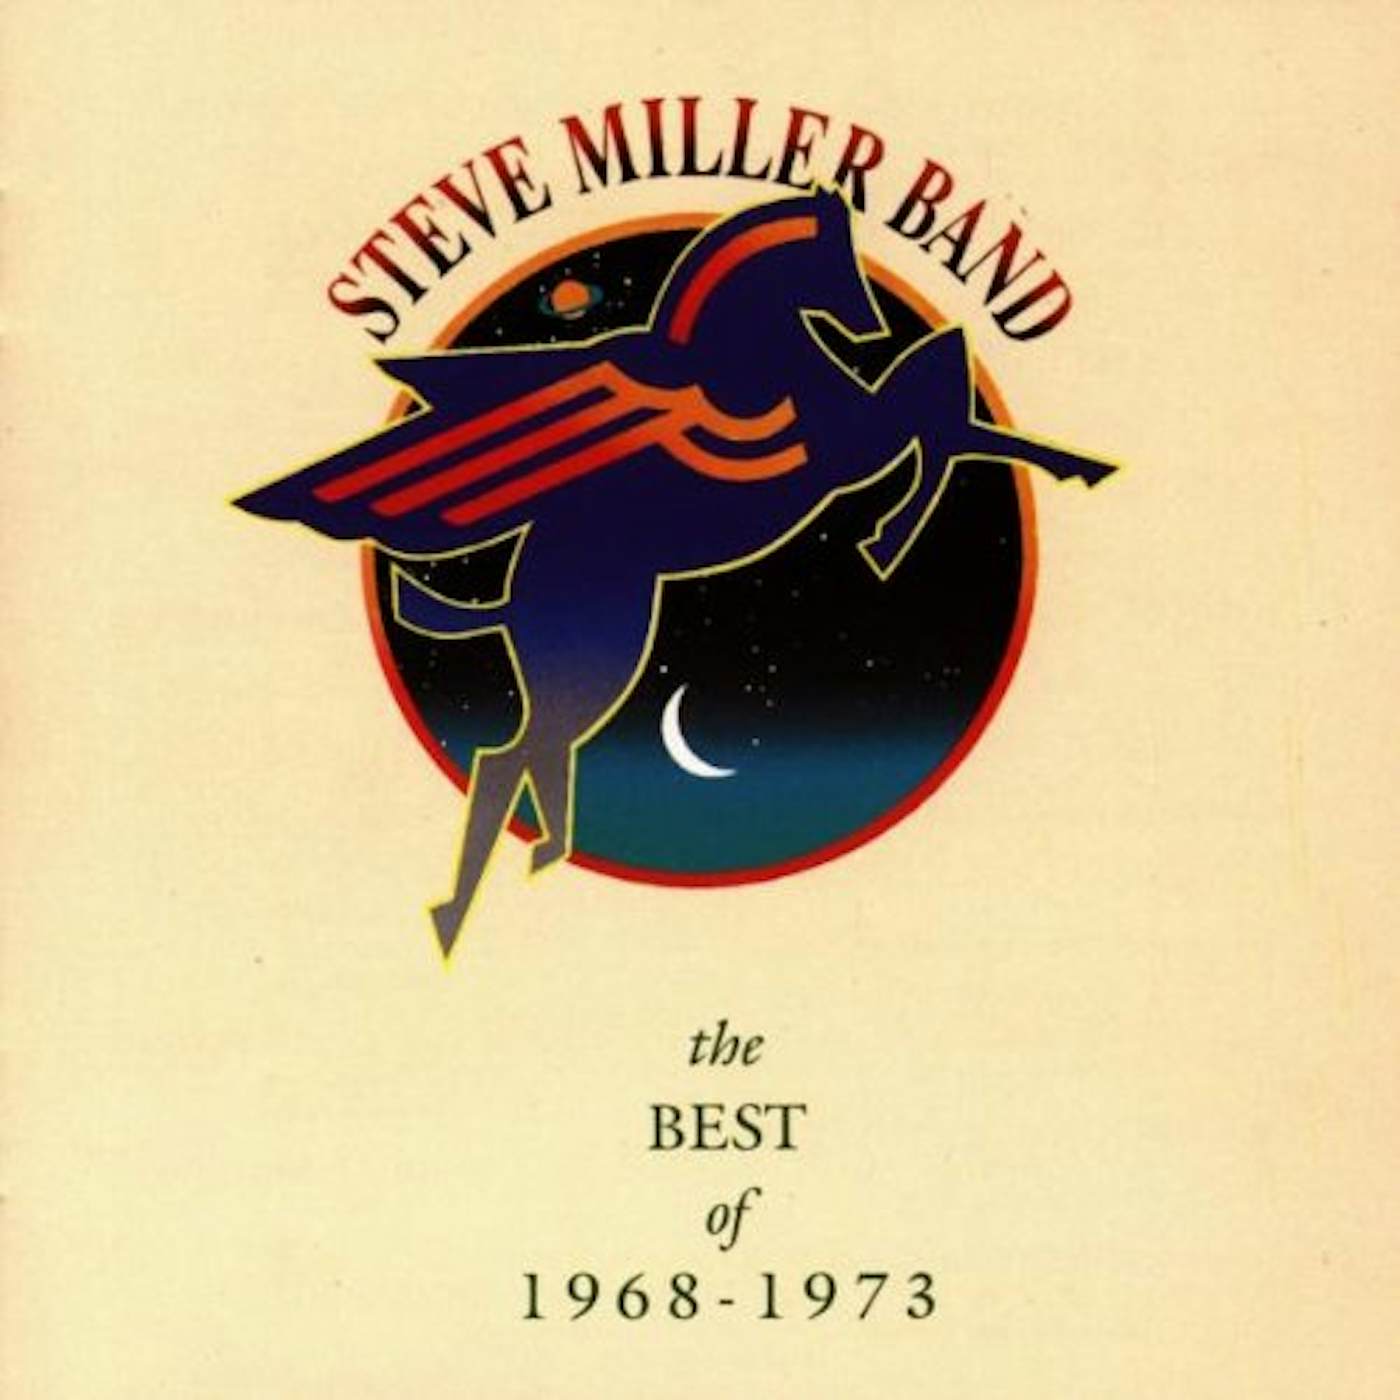 Steve Miller Band BEST OF 1968-73 CD